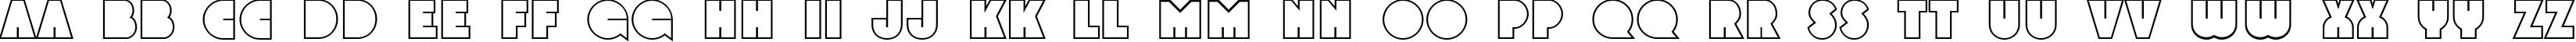 Пример написания английского алфавита шрифтом a_GrotoOtl